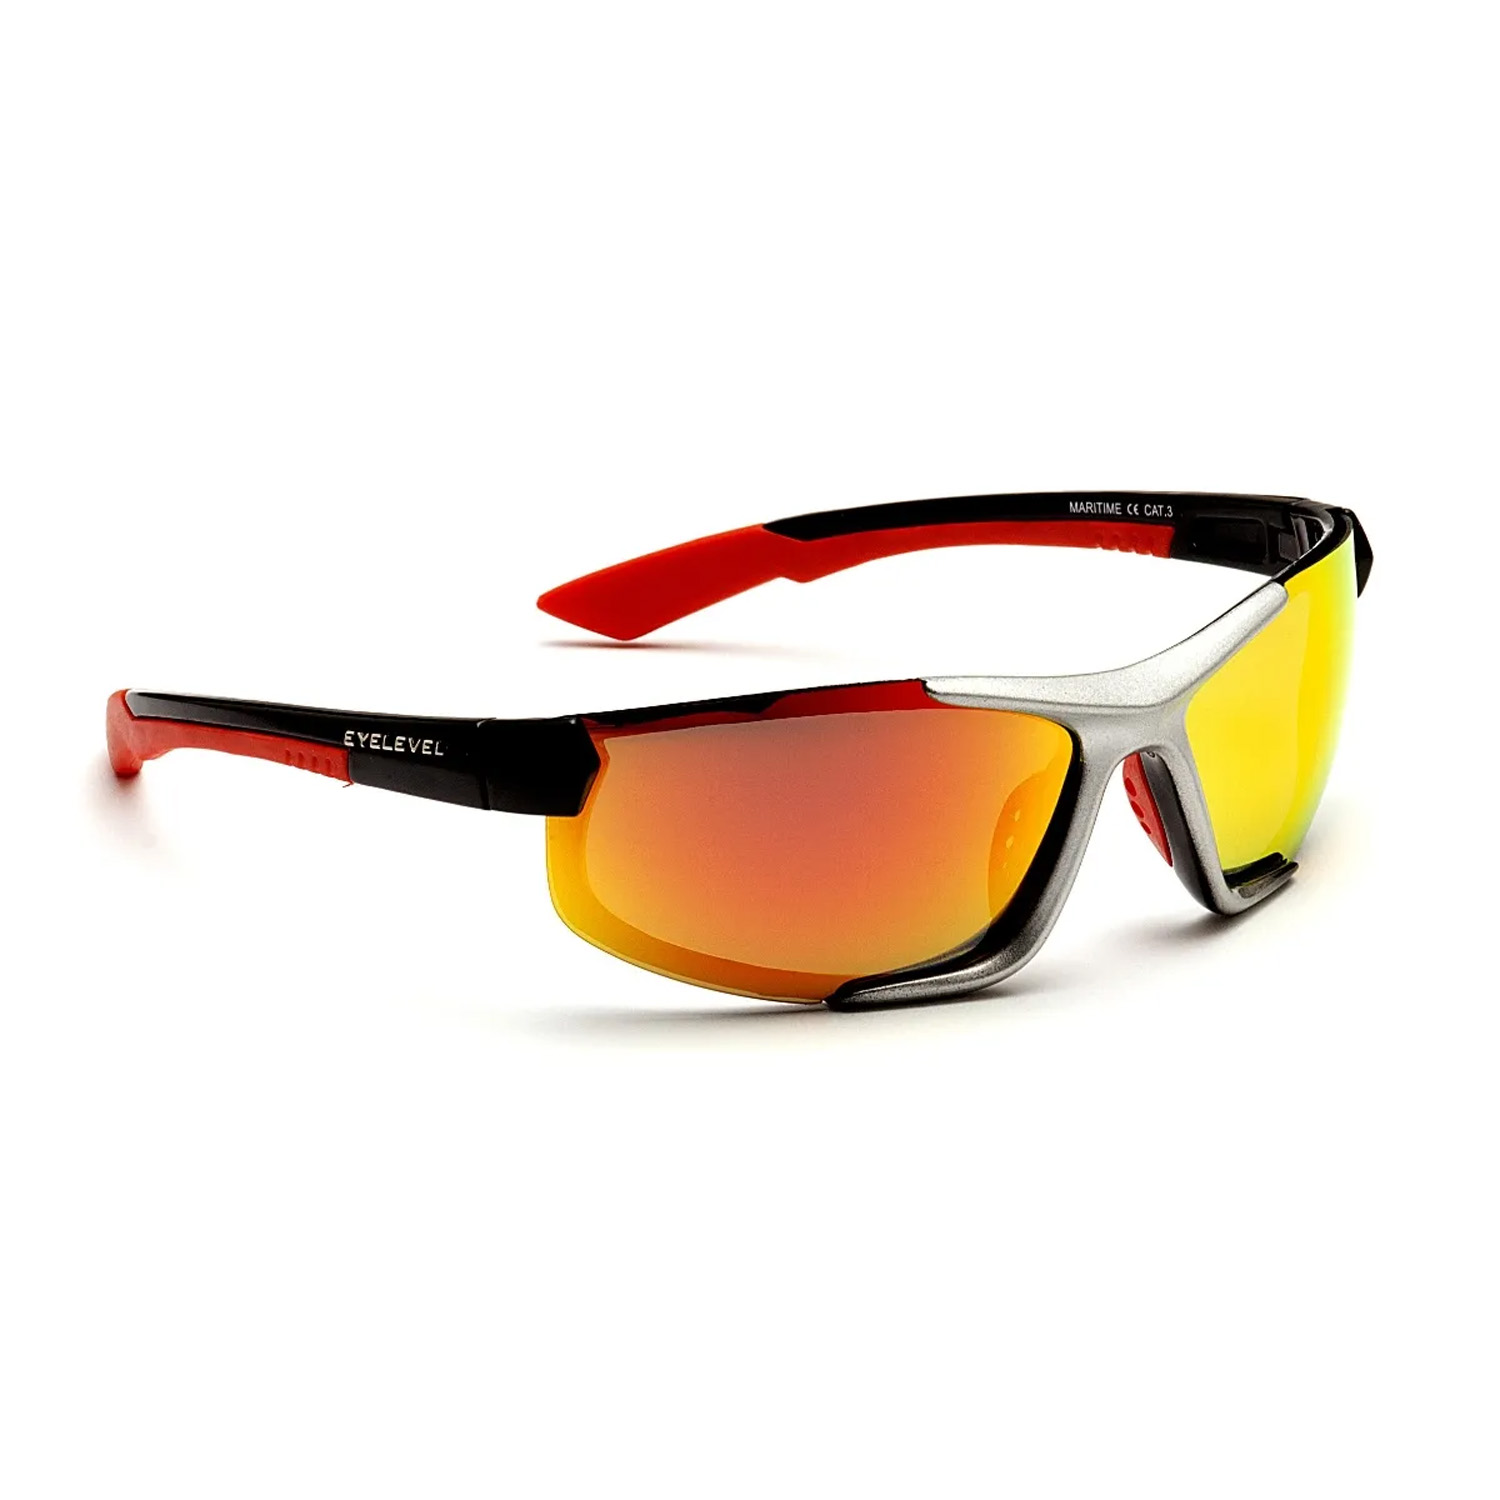 https://www.coastwatersports.com/images/products/Eyelevel-Maritime-Polarized-Sunglasses-Red-71011.jpg